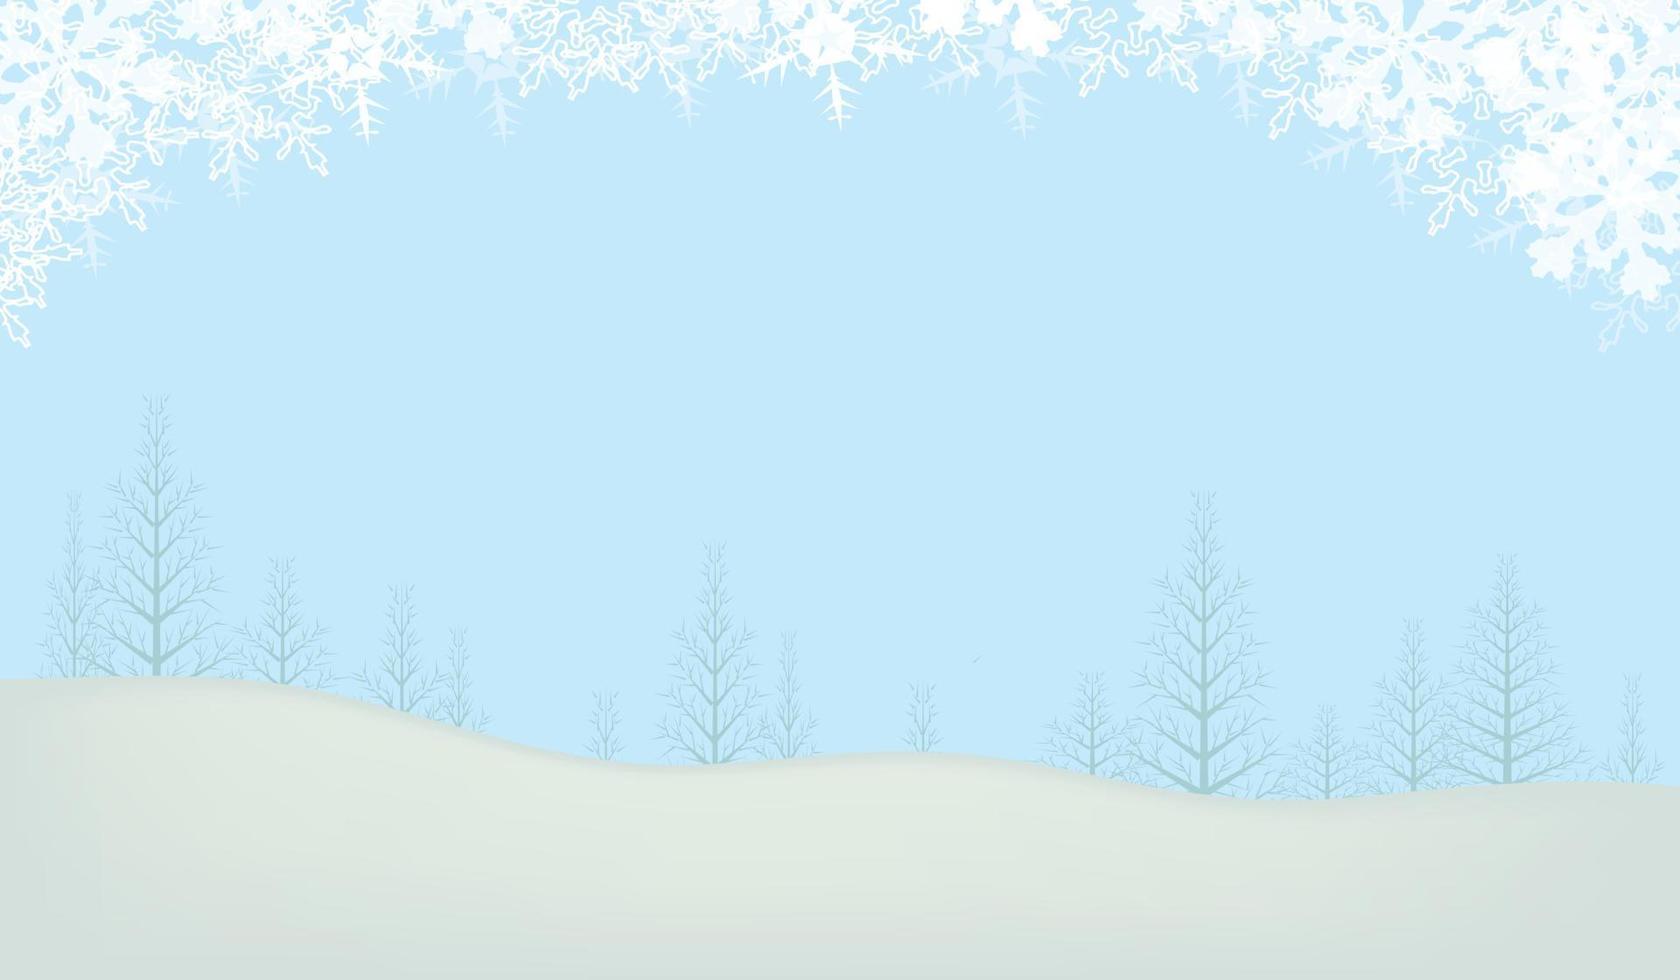 nevicata tranquilla scena di Natale con spazio vuoto per il tuo messaggio. vettore